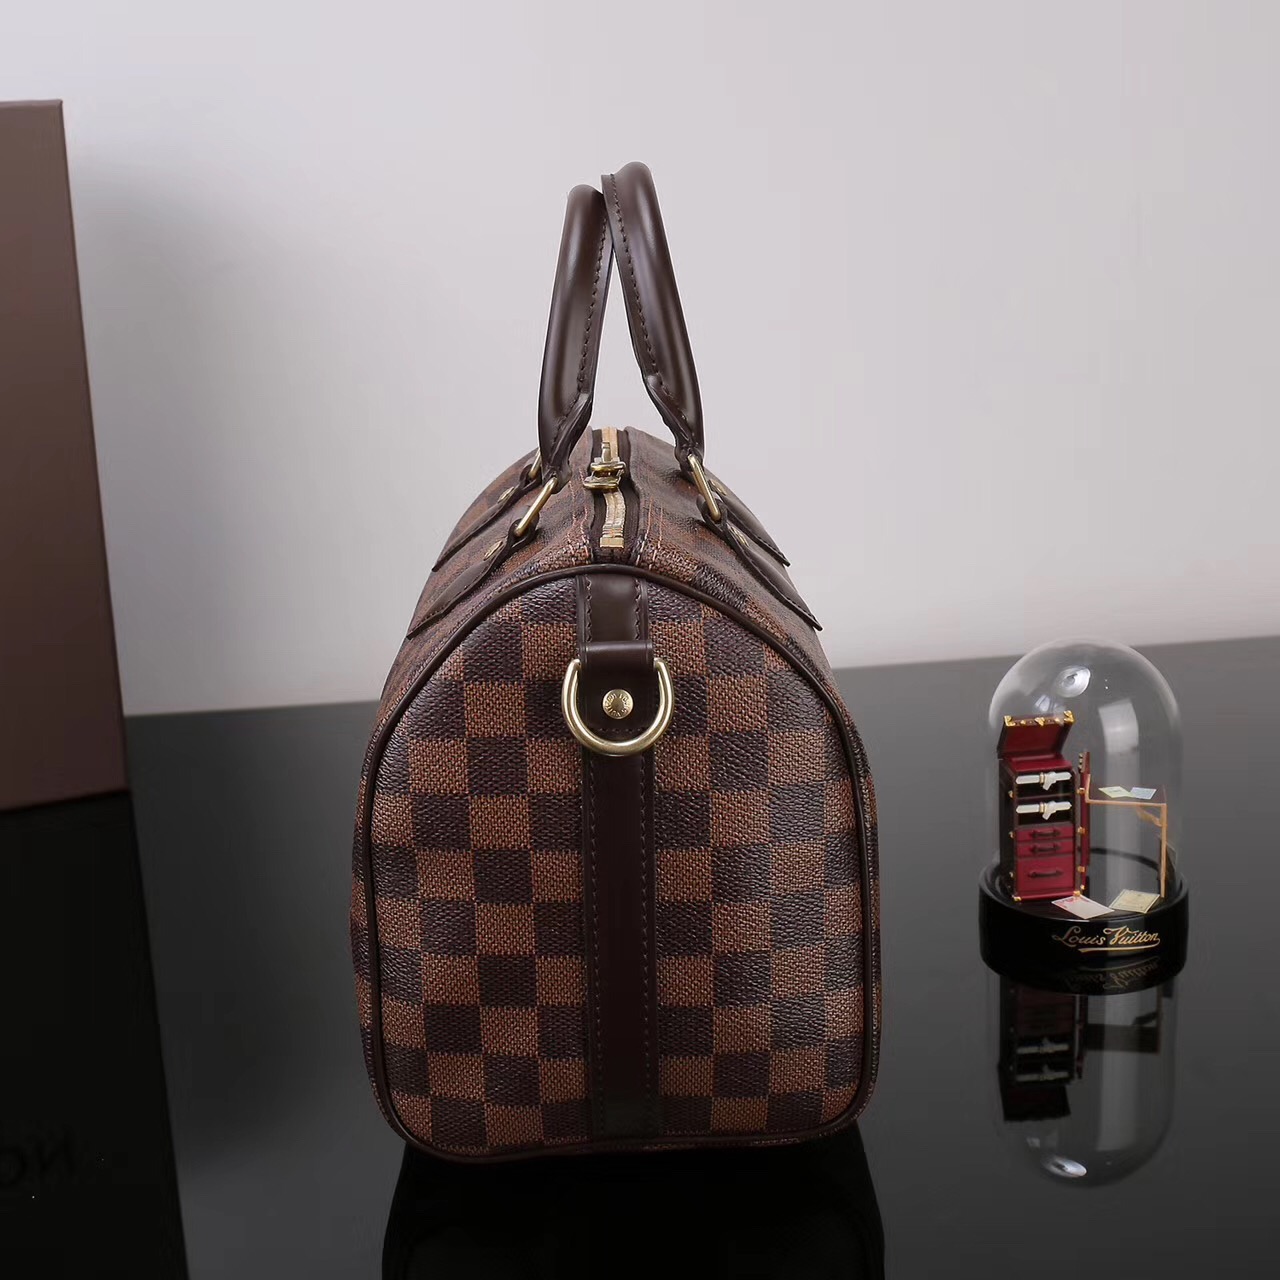 LV Louis Vuitton N41368 Speedy Damier 25 bags Handbags Brown